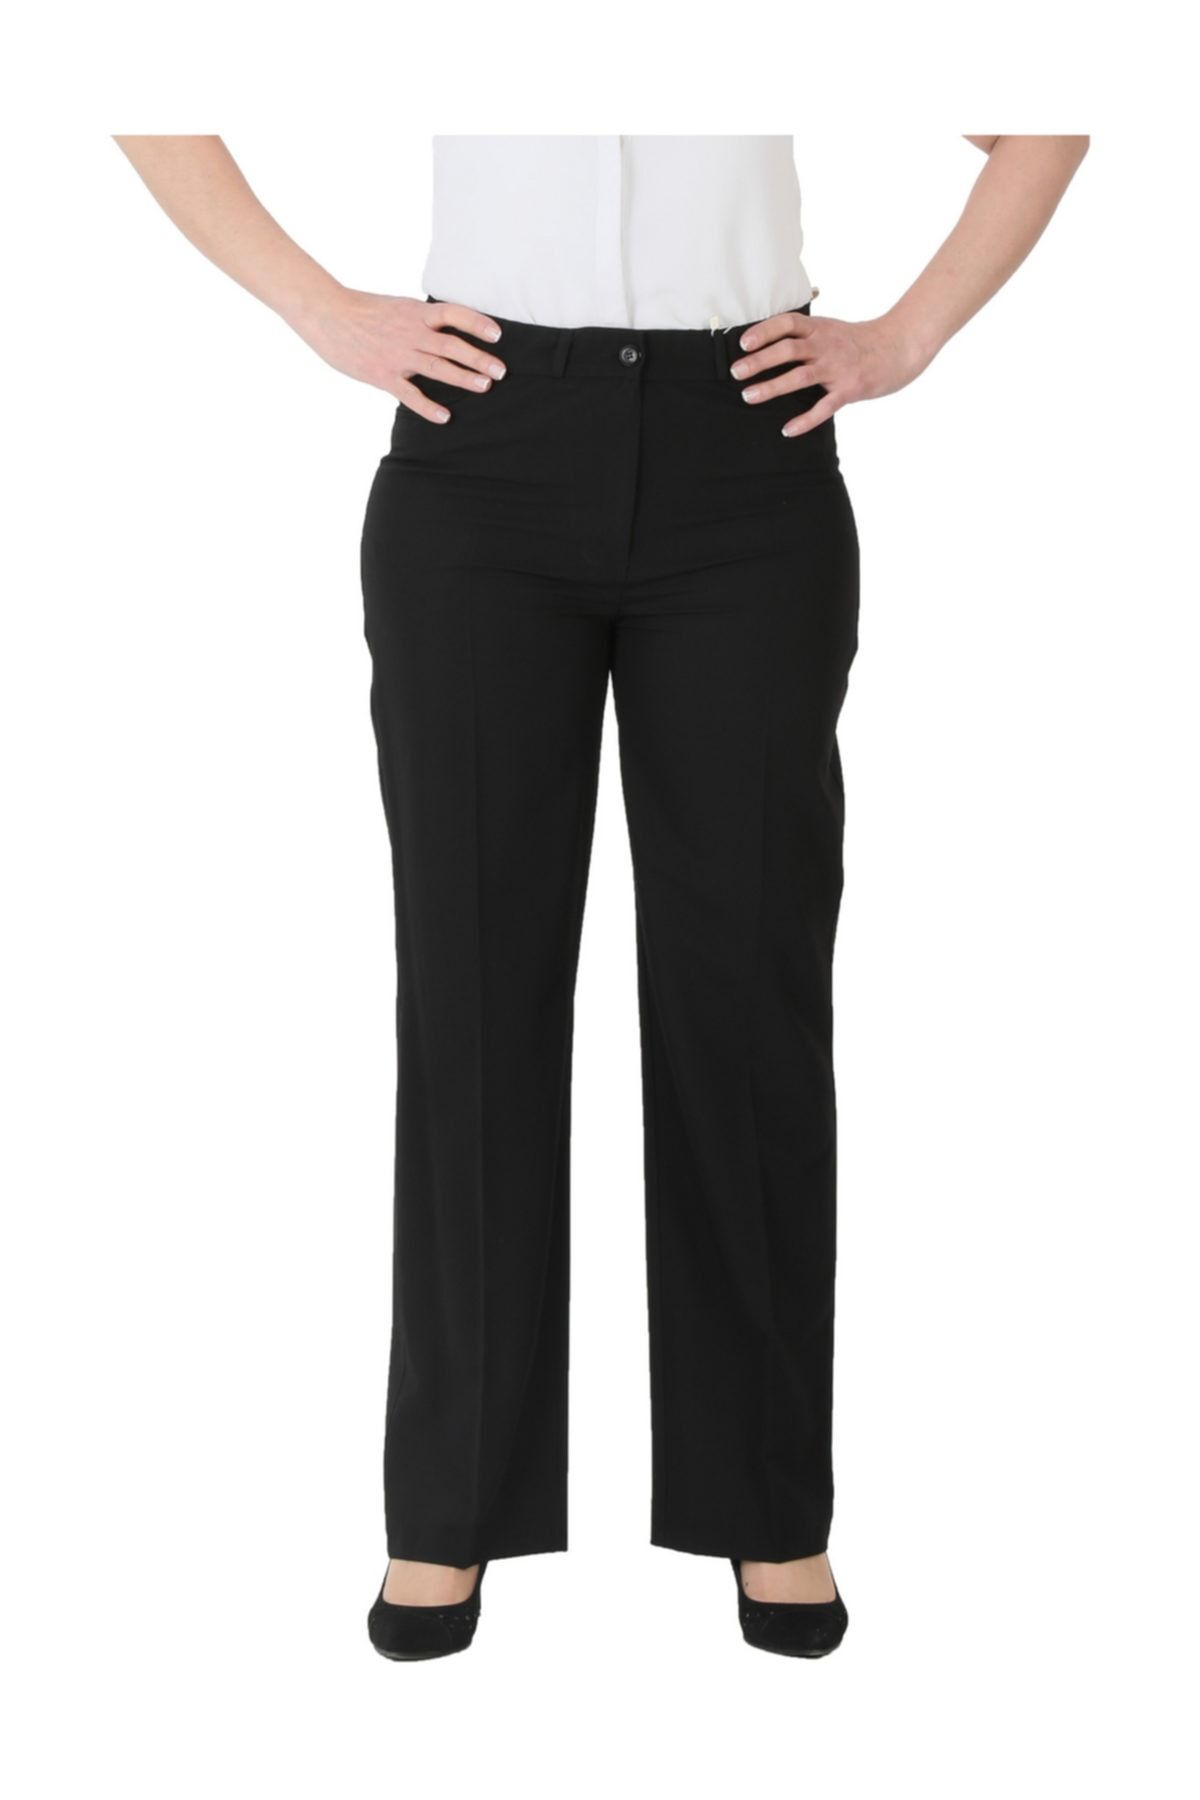 Rmg Kadın Siyah Kumaş Normal Bel Düz Paça Pantolon Nvr1156